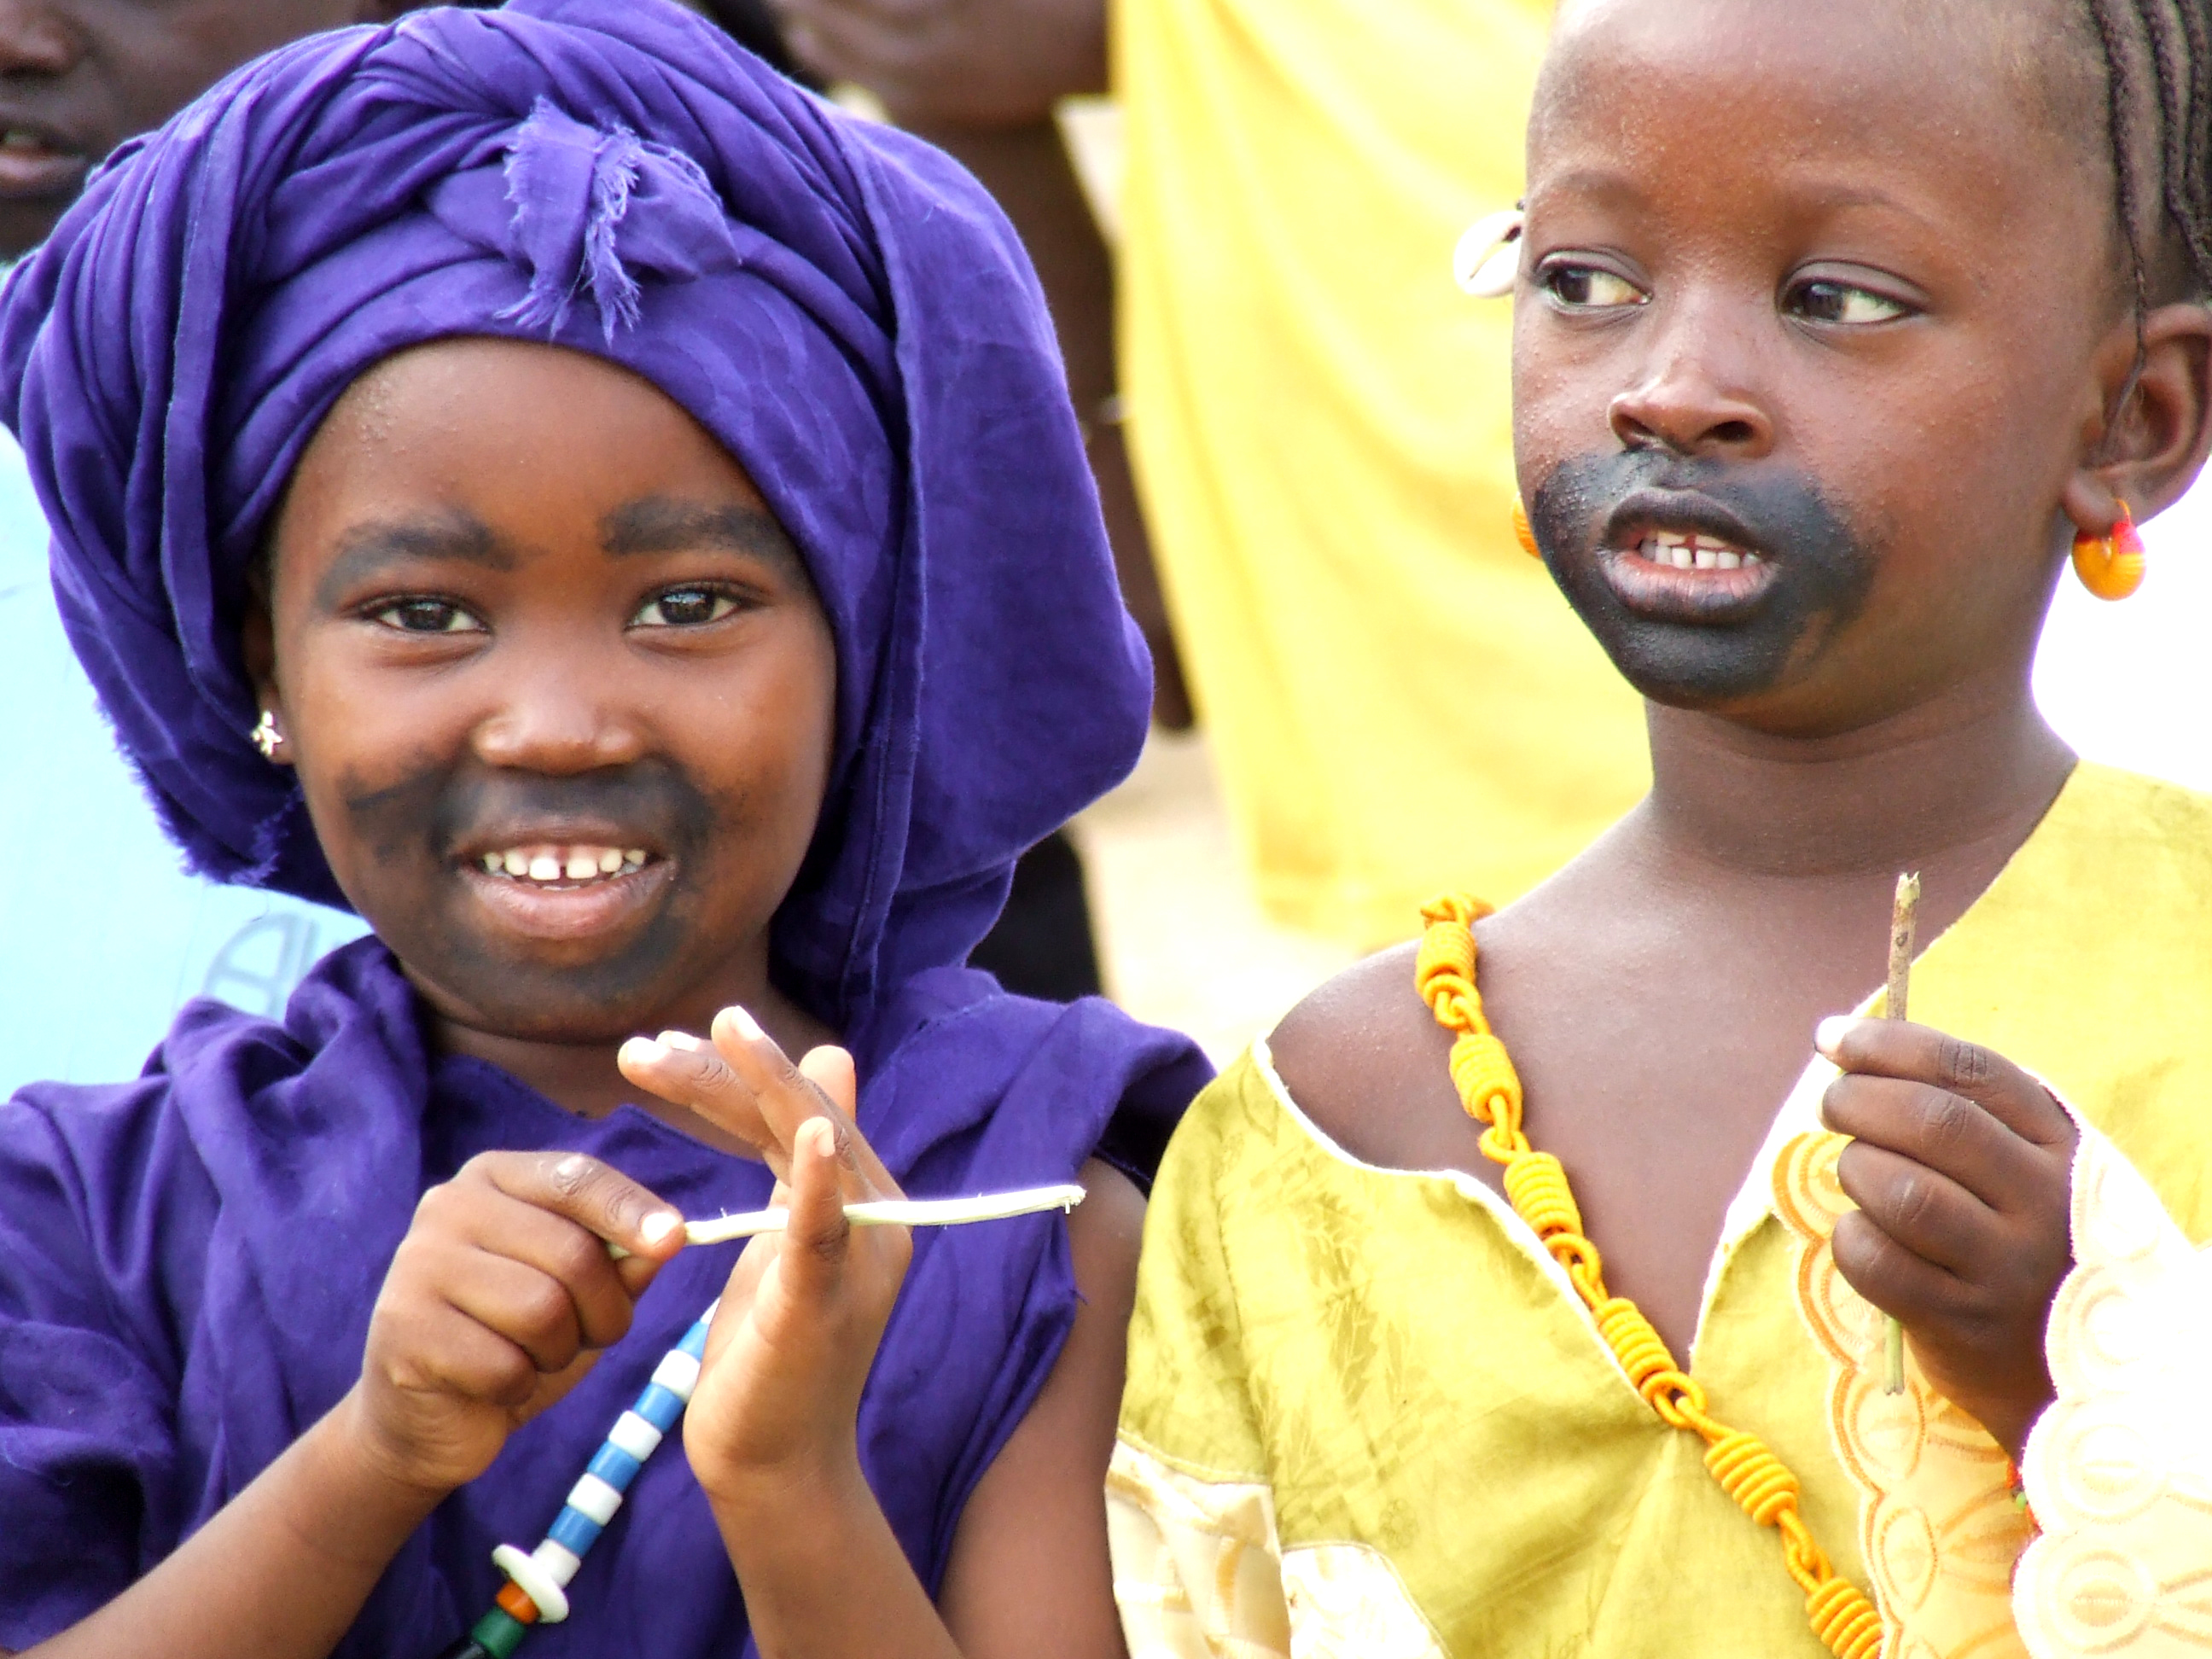 Good africa. Сенегальские дети. Макияж Африка дети. Лица детей Сенегала. Волоф народ.